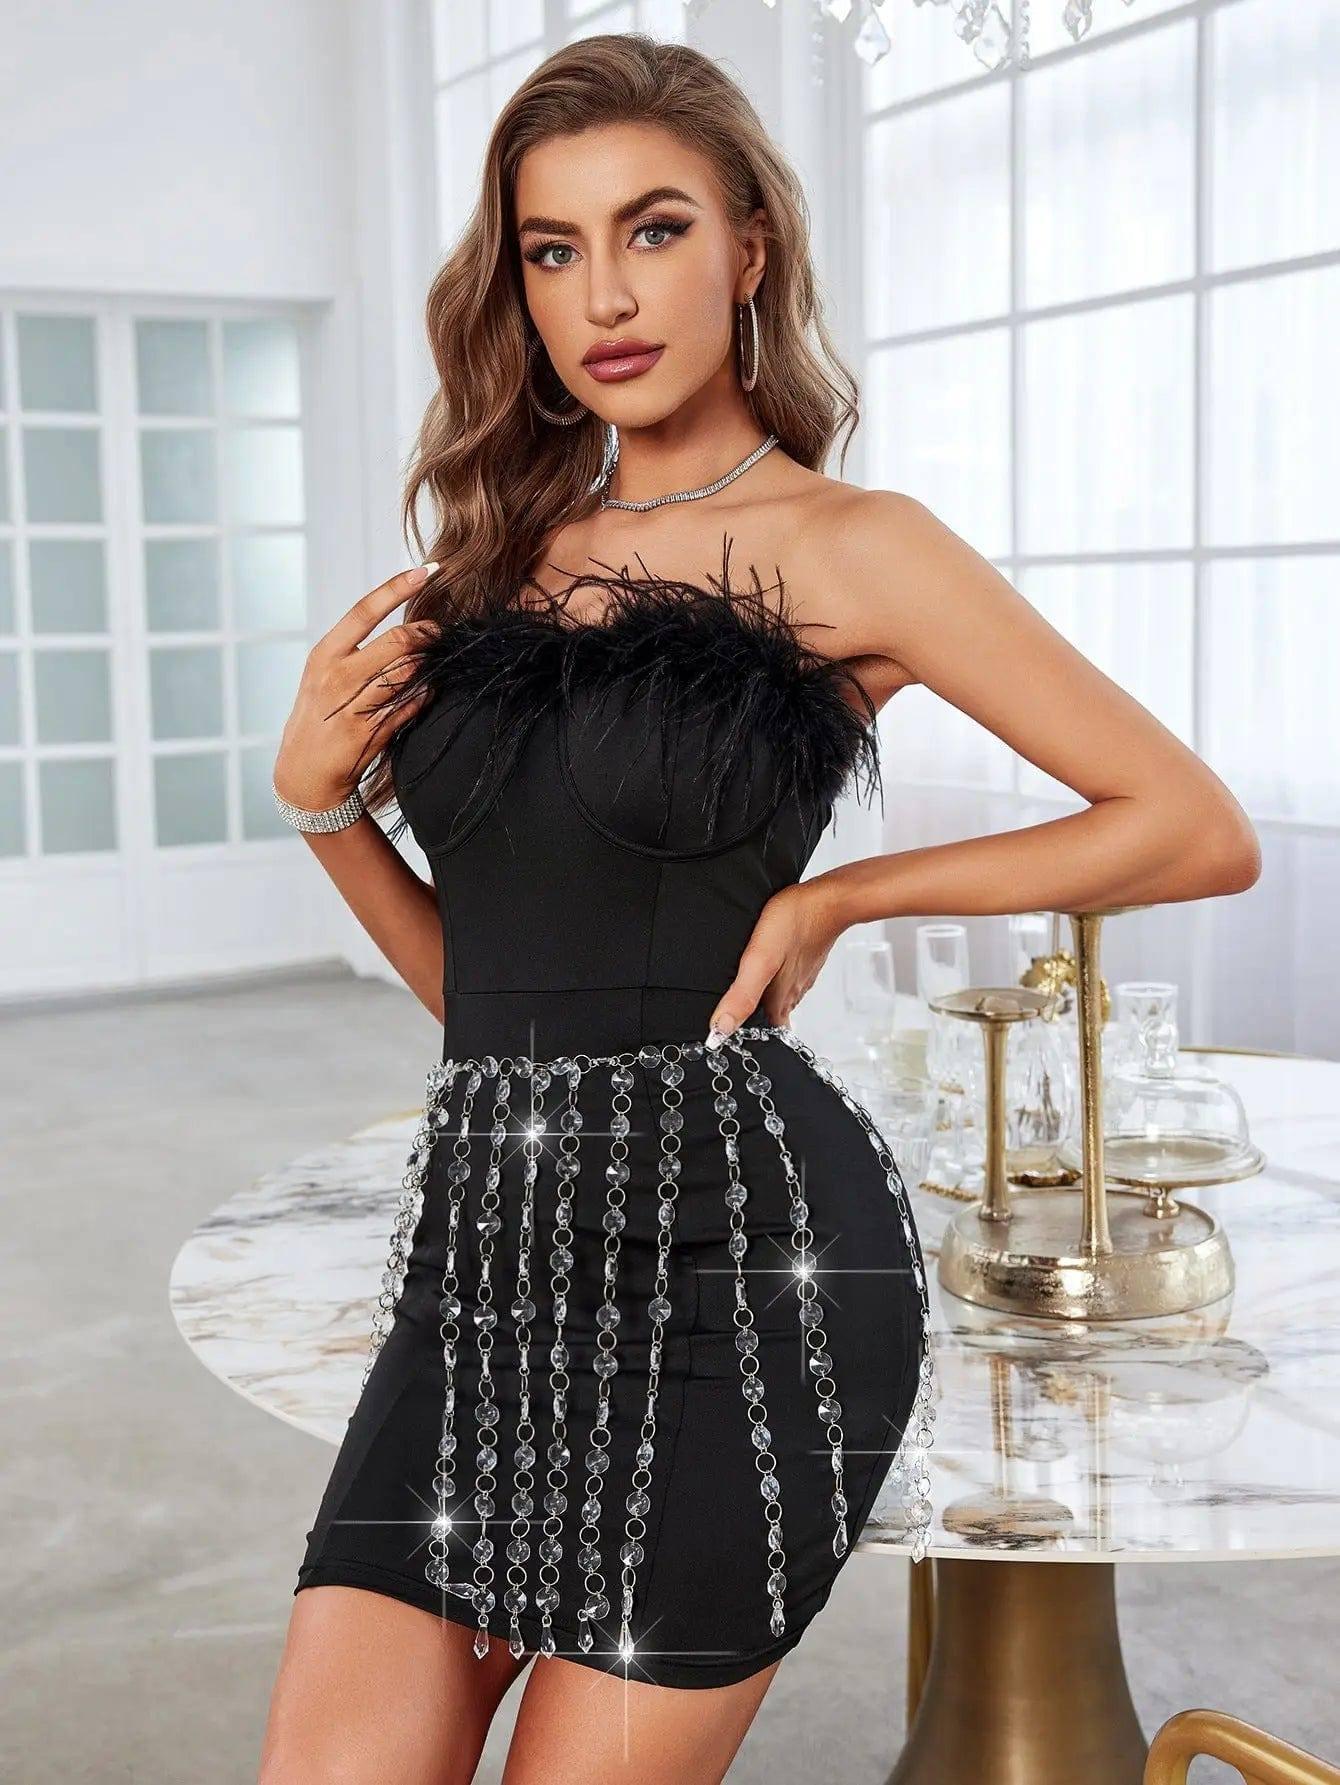 Women's Fashion Casual Tassel Jewel Skirt-Black-8